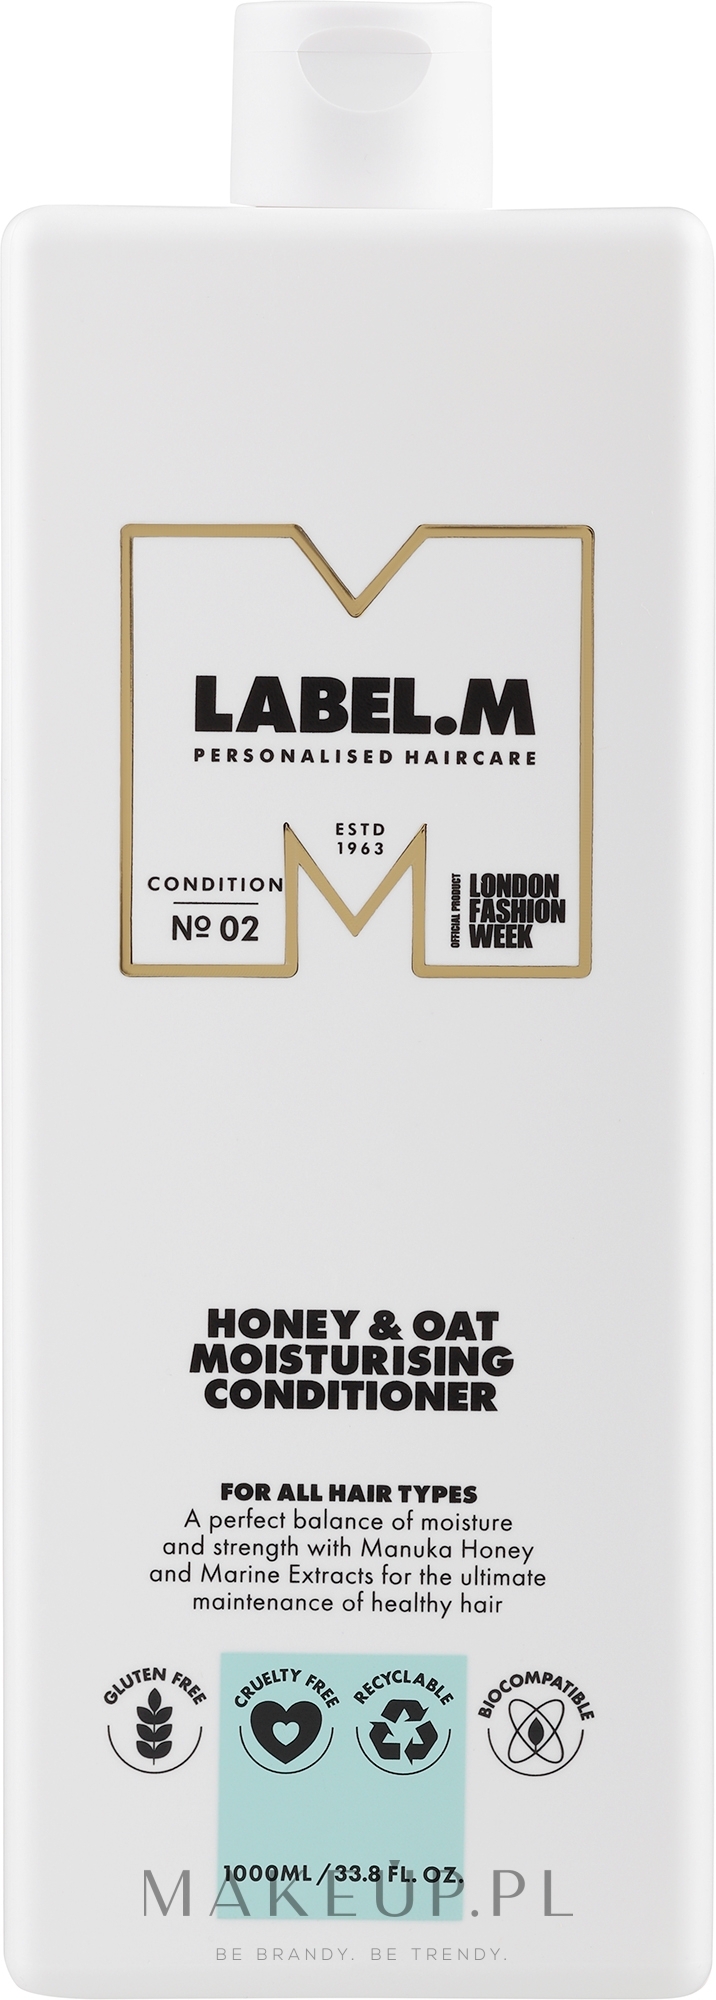 Nawilżająca odżywka do włosów - Label.m Professional Honey & Oat Moisturising Conditioner — Zdjęcie 1000 ml